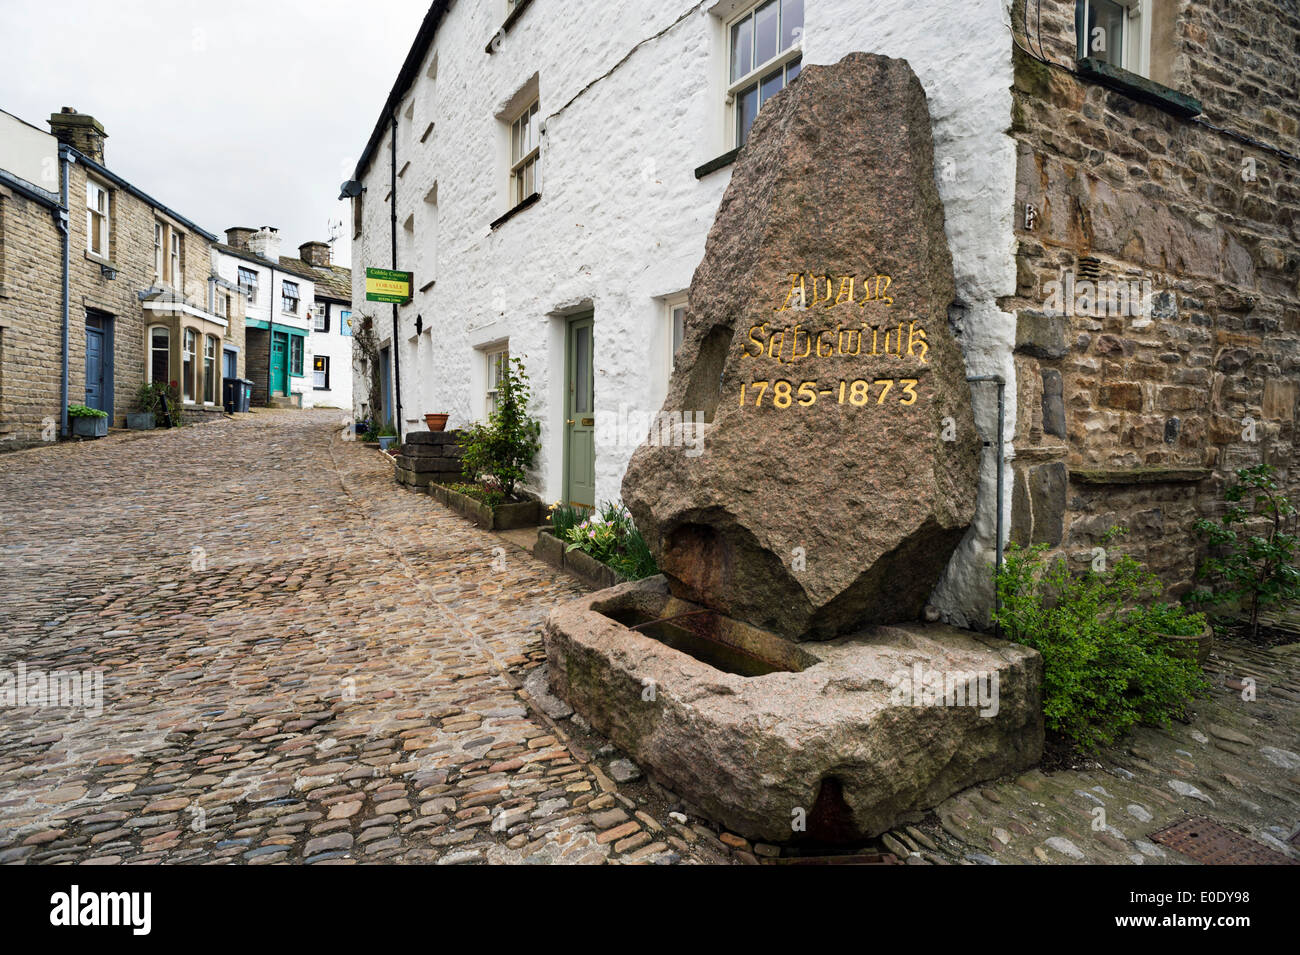 L'Adam Sedgwick,monument dans la rue principale pavée, le village de Dent, Cumbria, Royaume-Uni. Banque D'Images